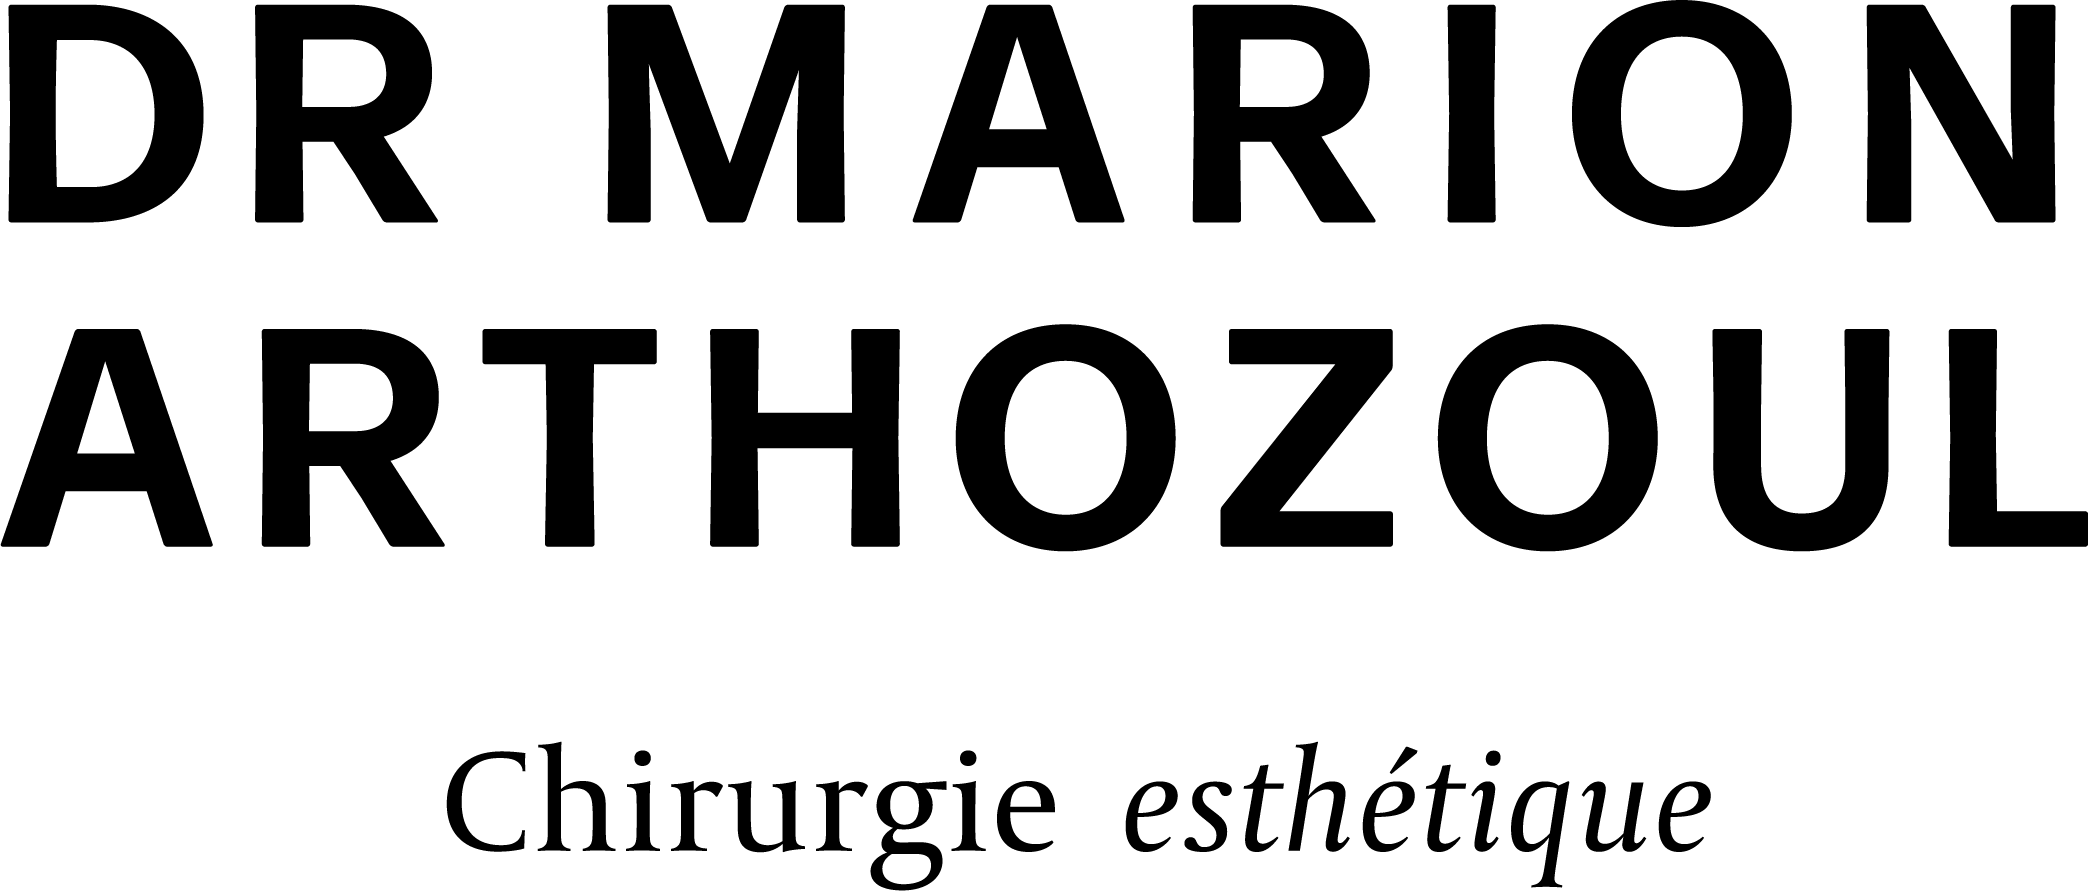 Docteur Marion Arthozoul